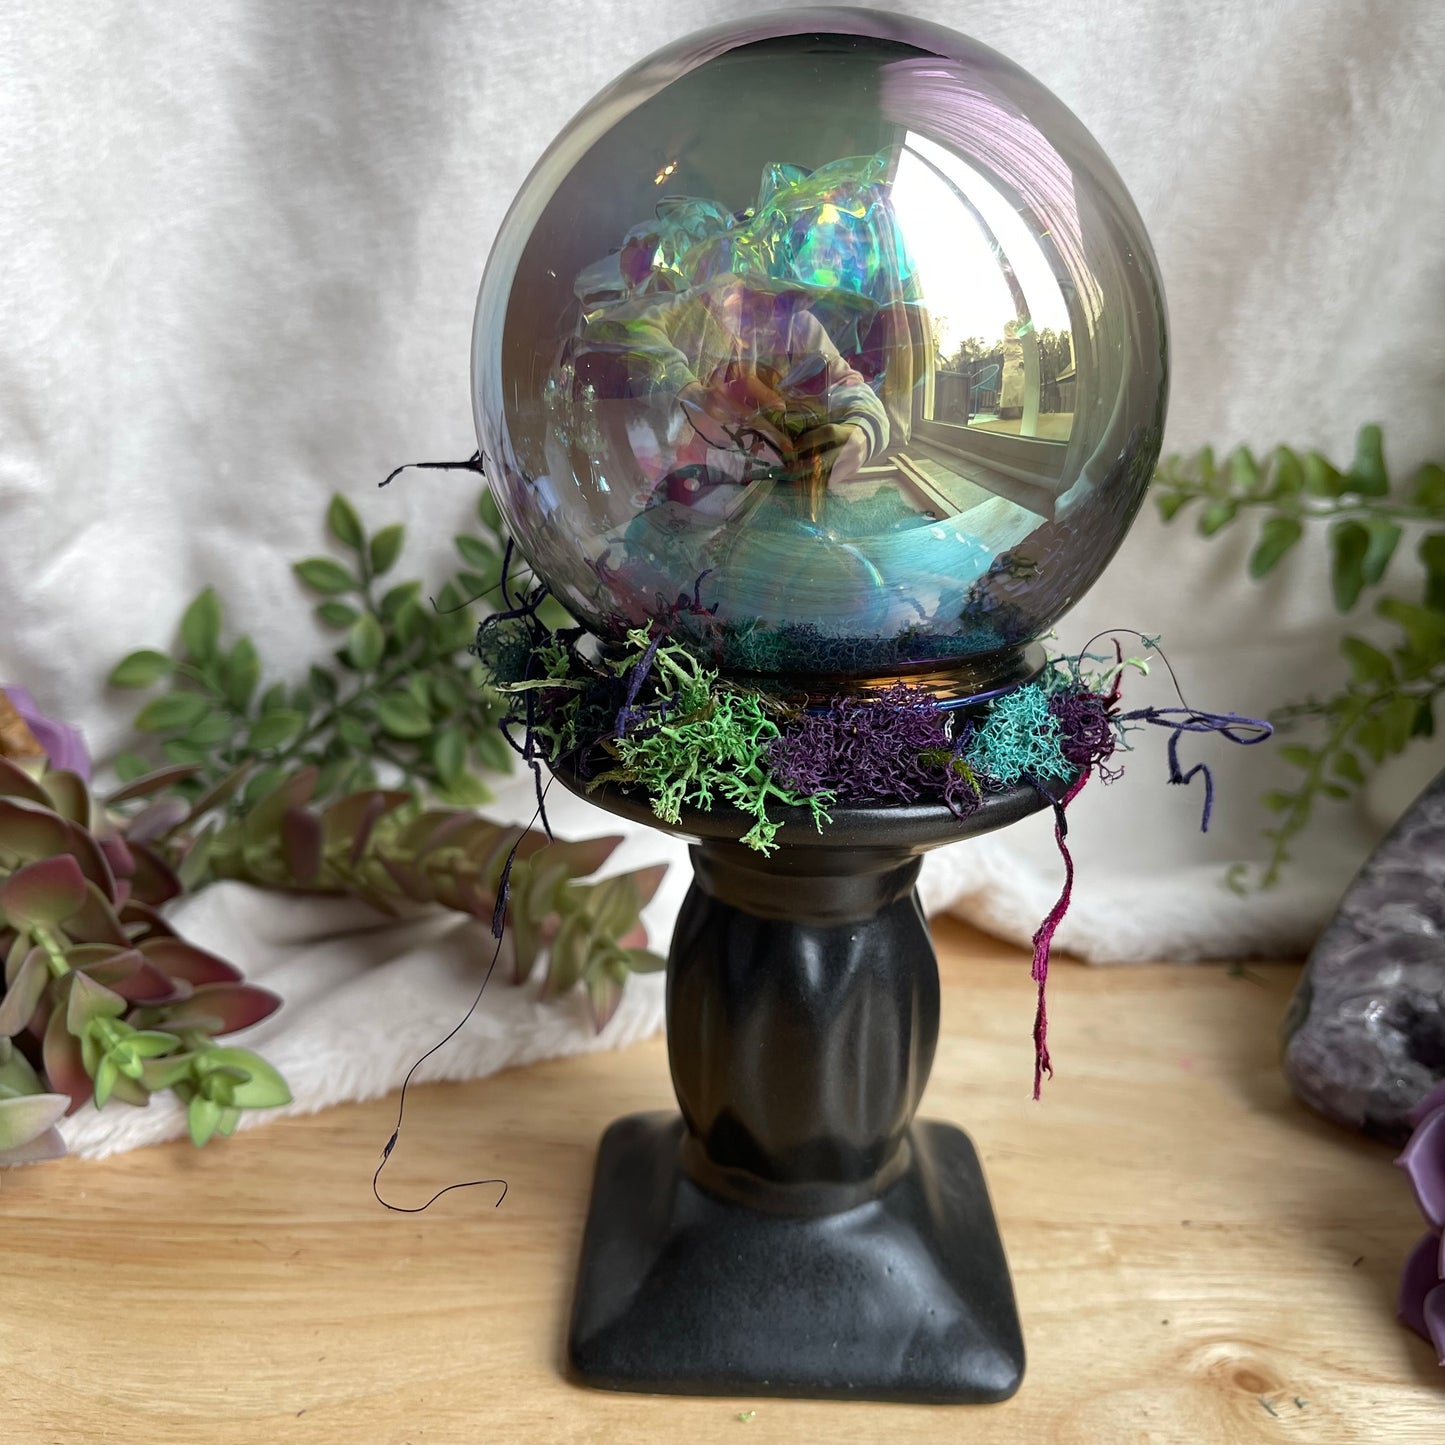 Smokey Rose Globe - black base, dark iridescent ball